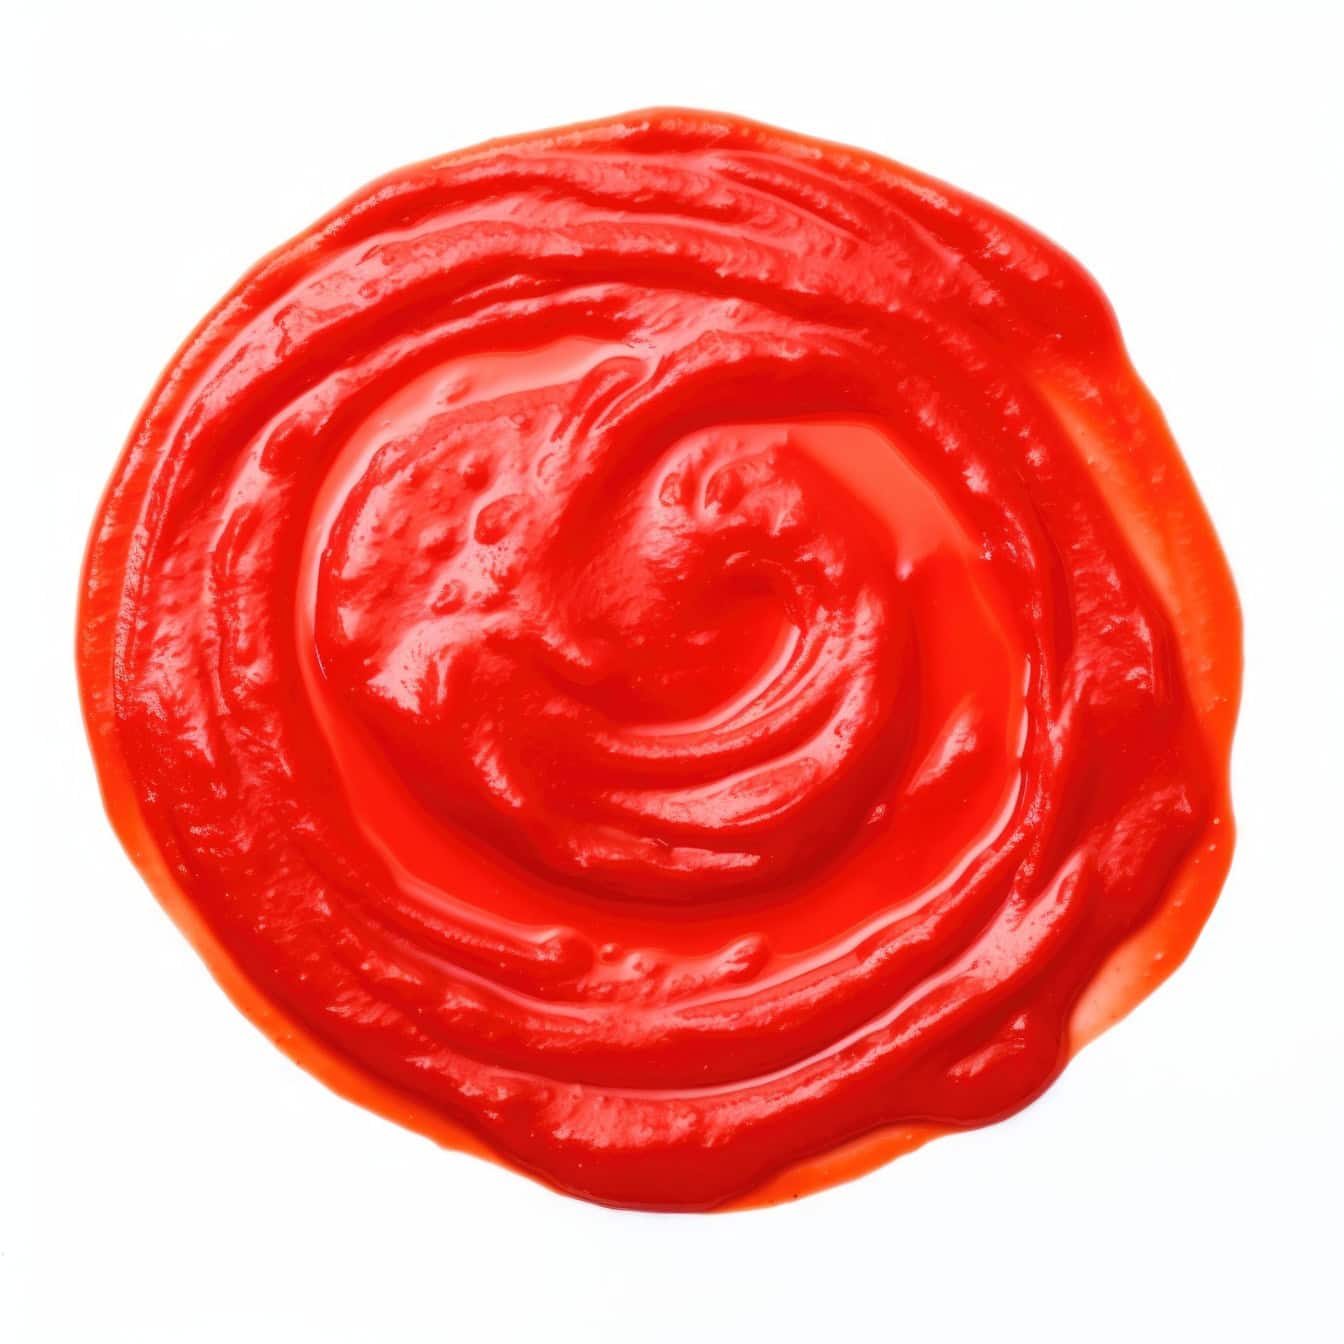 Röd cirkel av sås av ketchup eller tomatpuré på vit bakgrund